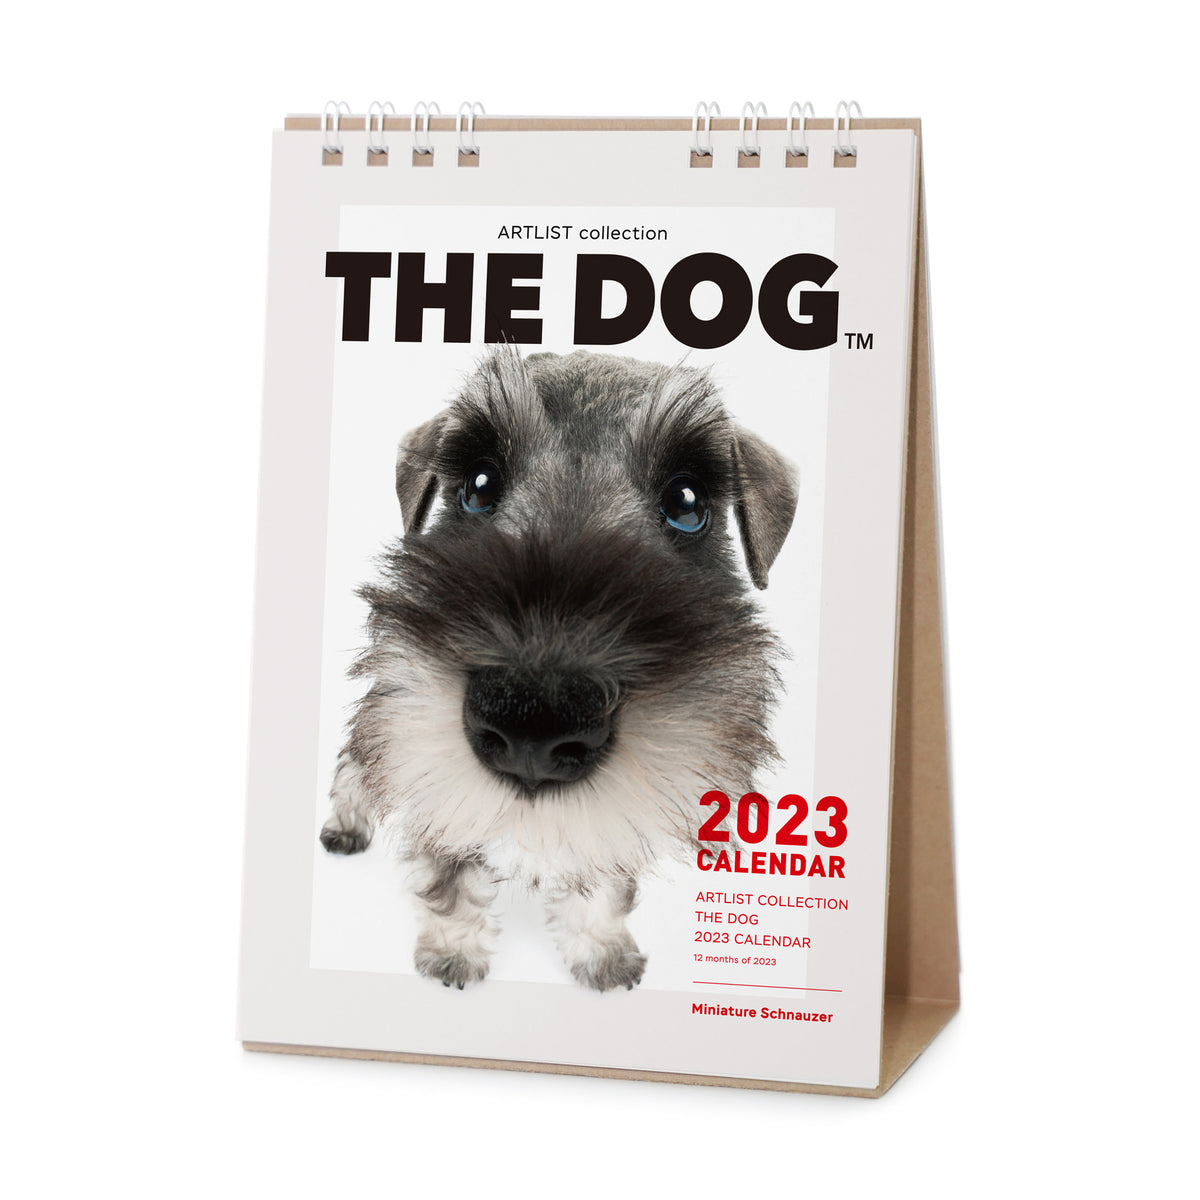 The Dog 23年 カレンダー 卓上サイズ ミニチュアシュナウザー The Dog Store The Dog公式オンラインショップ